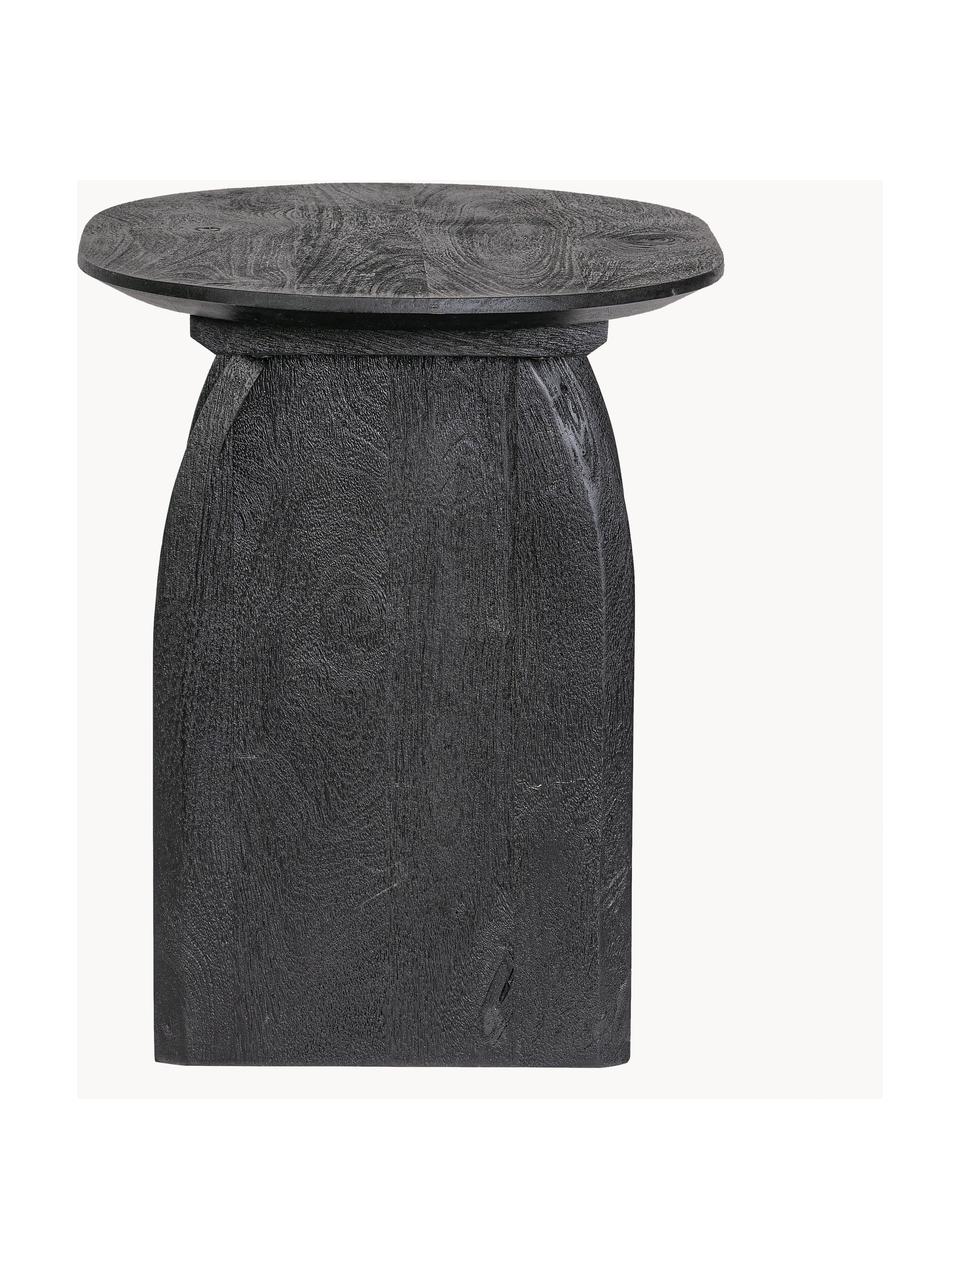 Ovaler Mangoholz-Beistelltisch Monterrey, Mangoholz, Mangoholz, schwarz lackiert, B 60 x H 56 cm